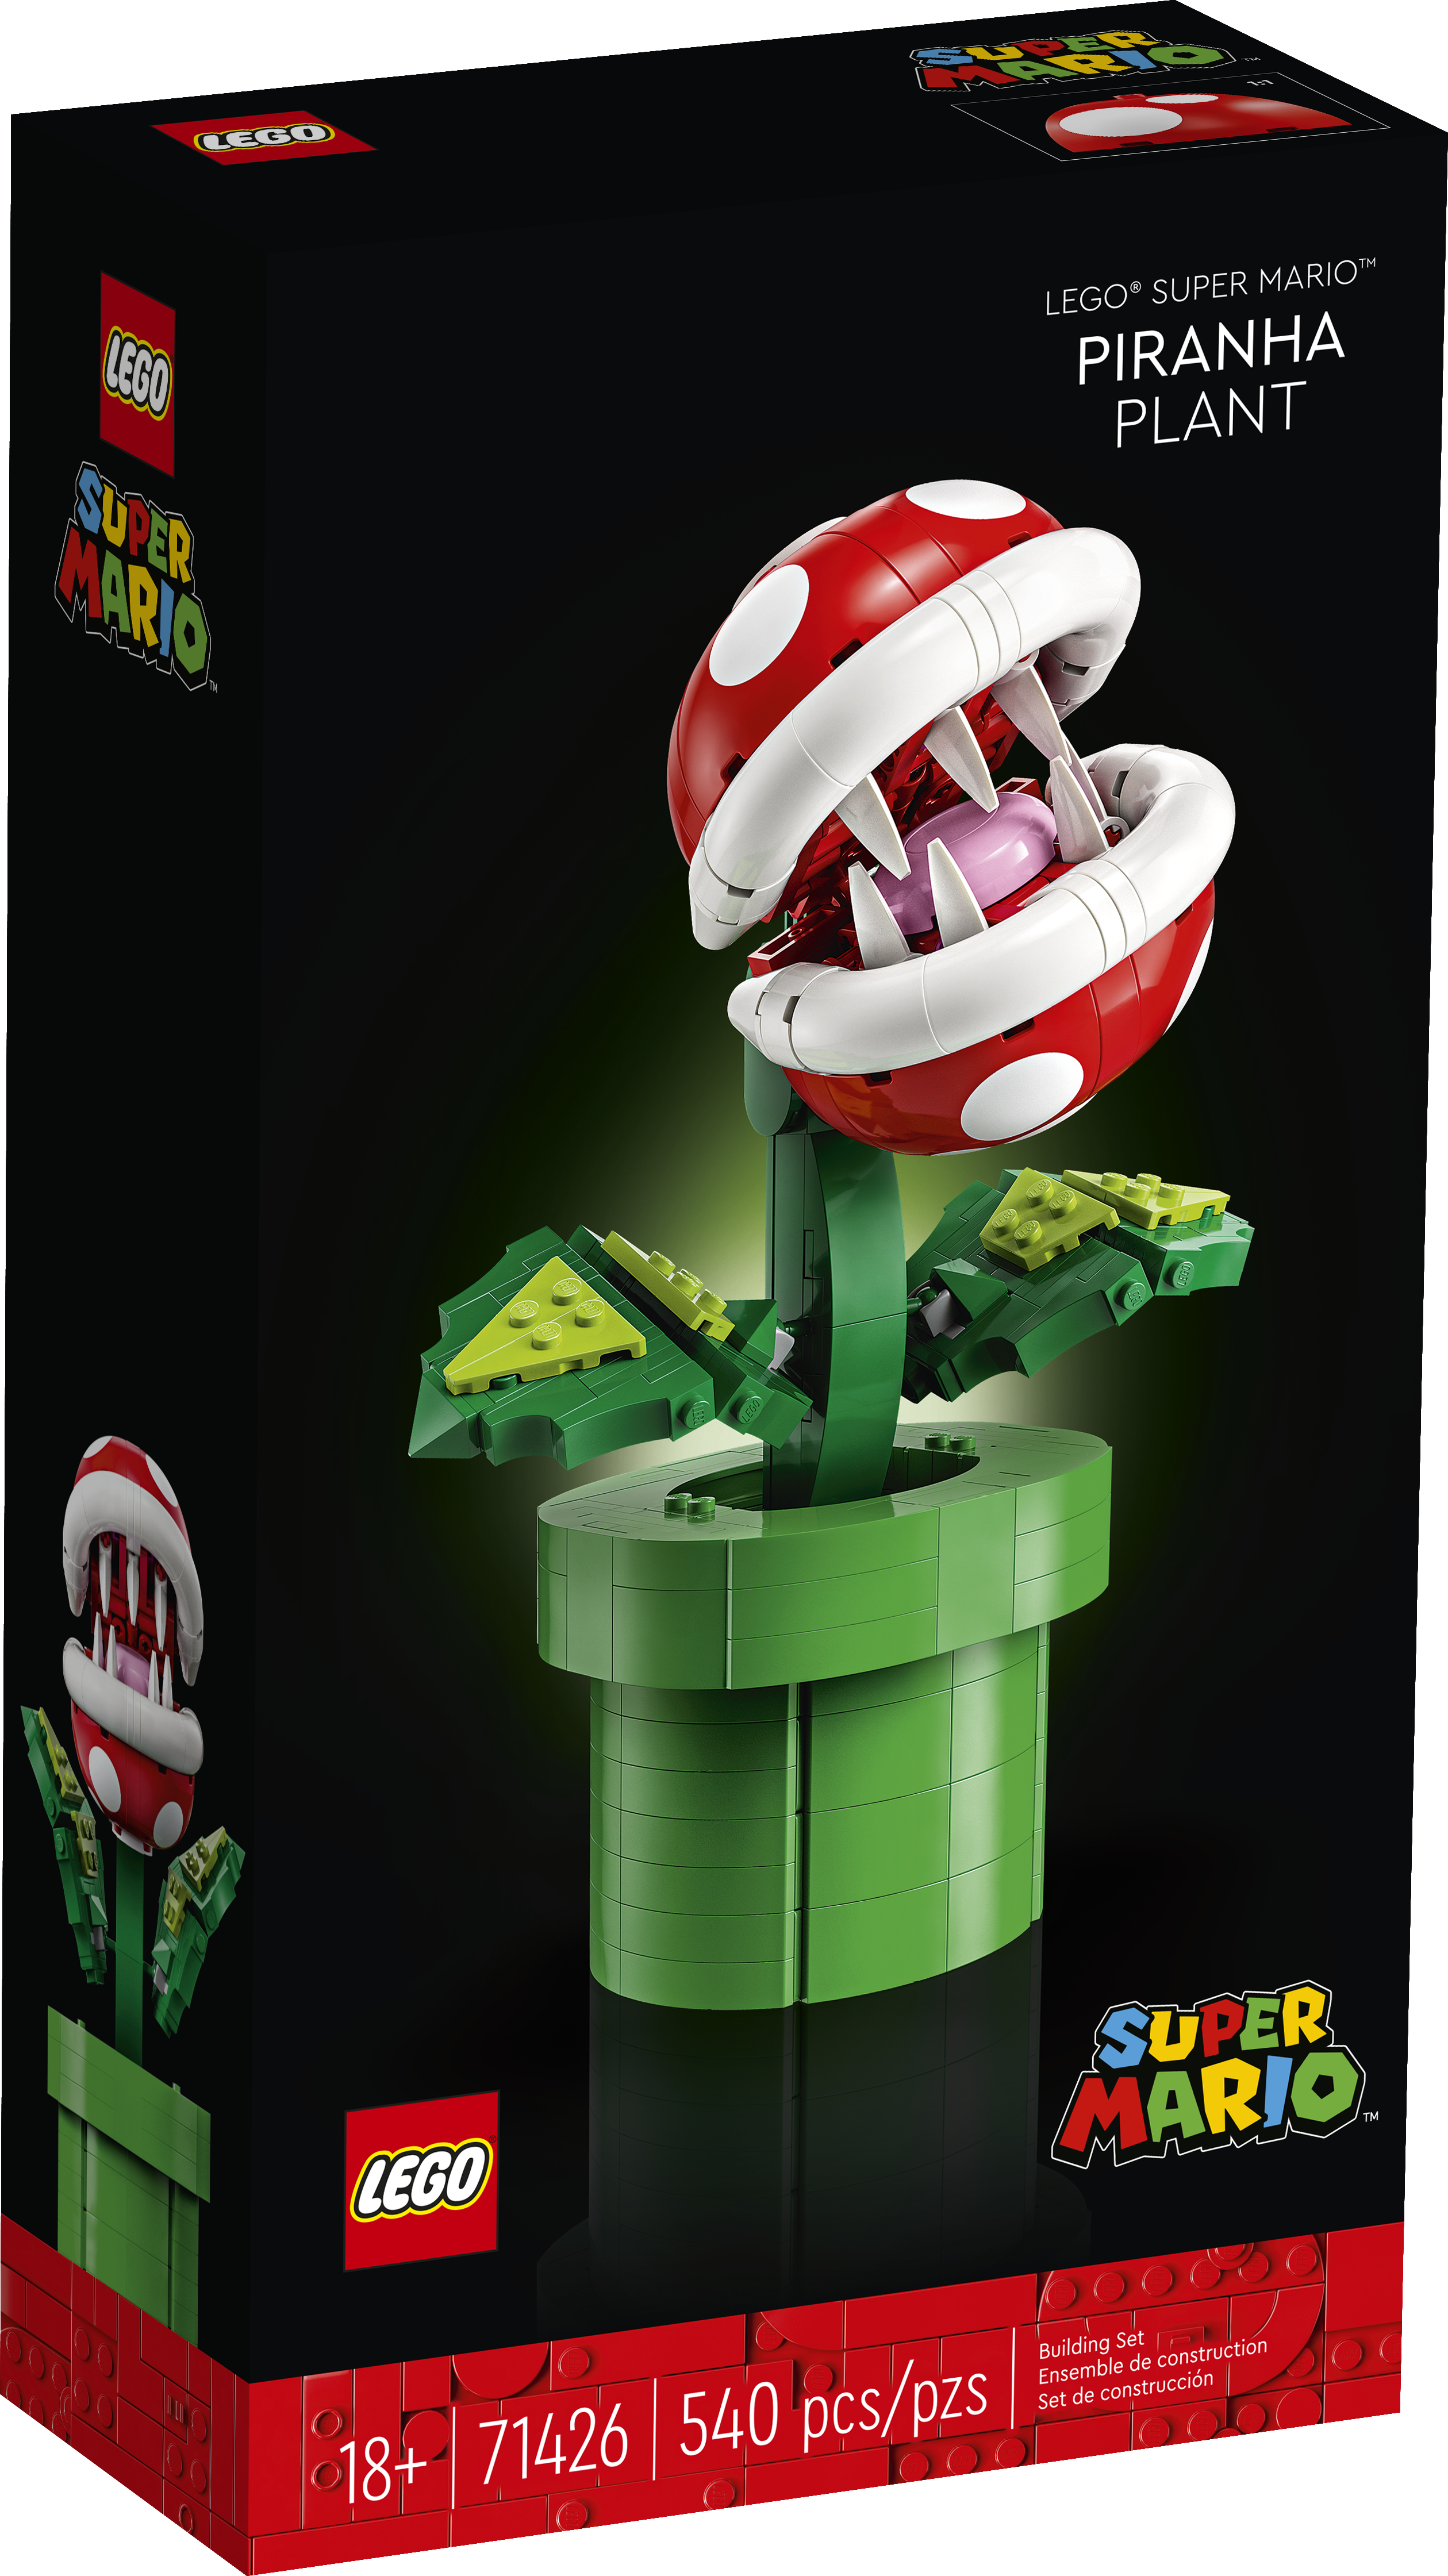 LEGO et Nintendo annoncent un set Plante Piranha très abordable